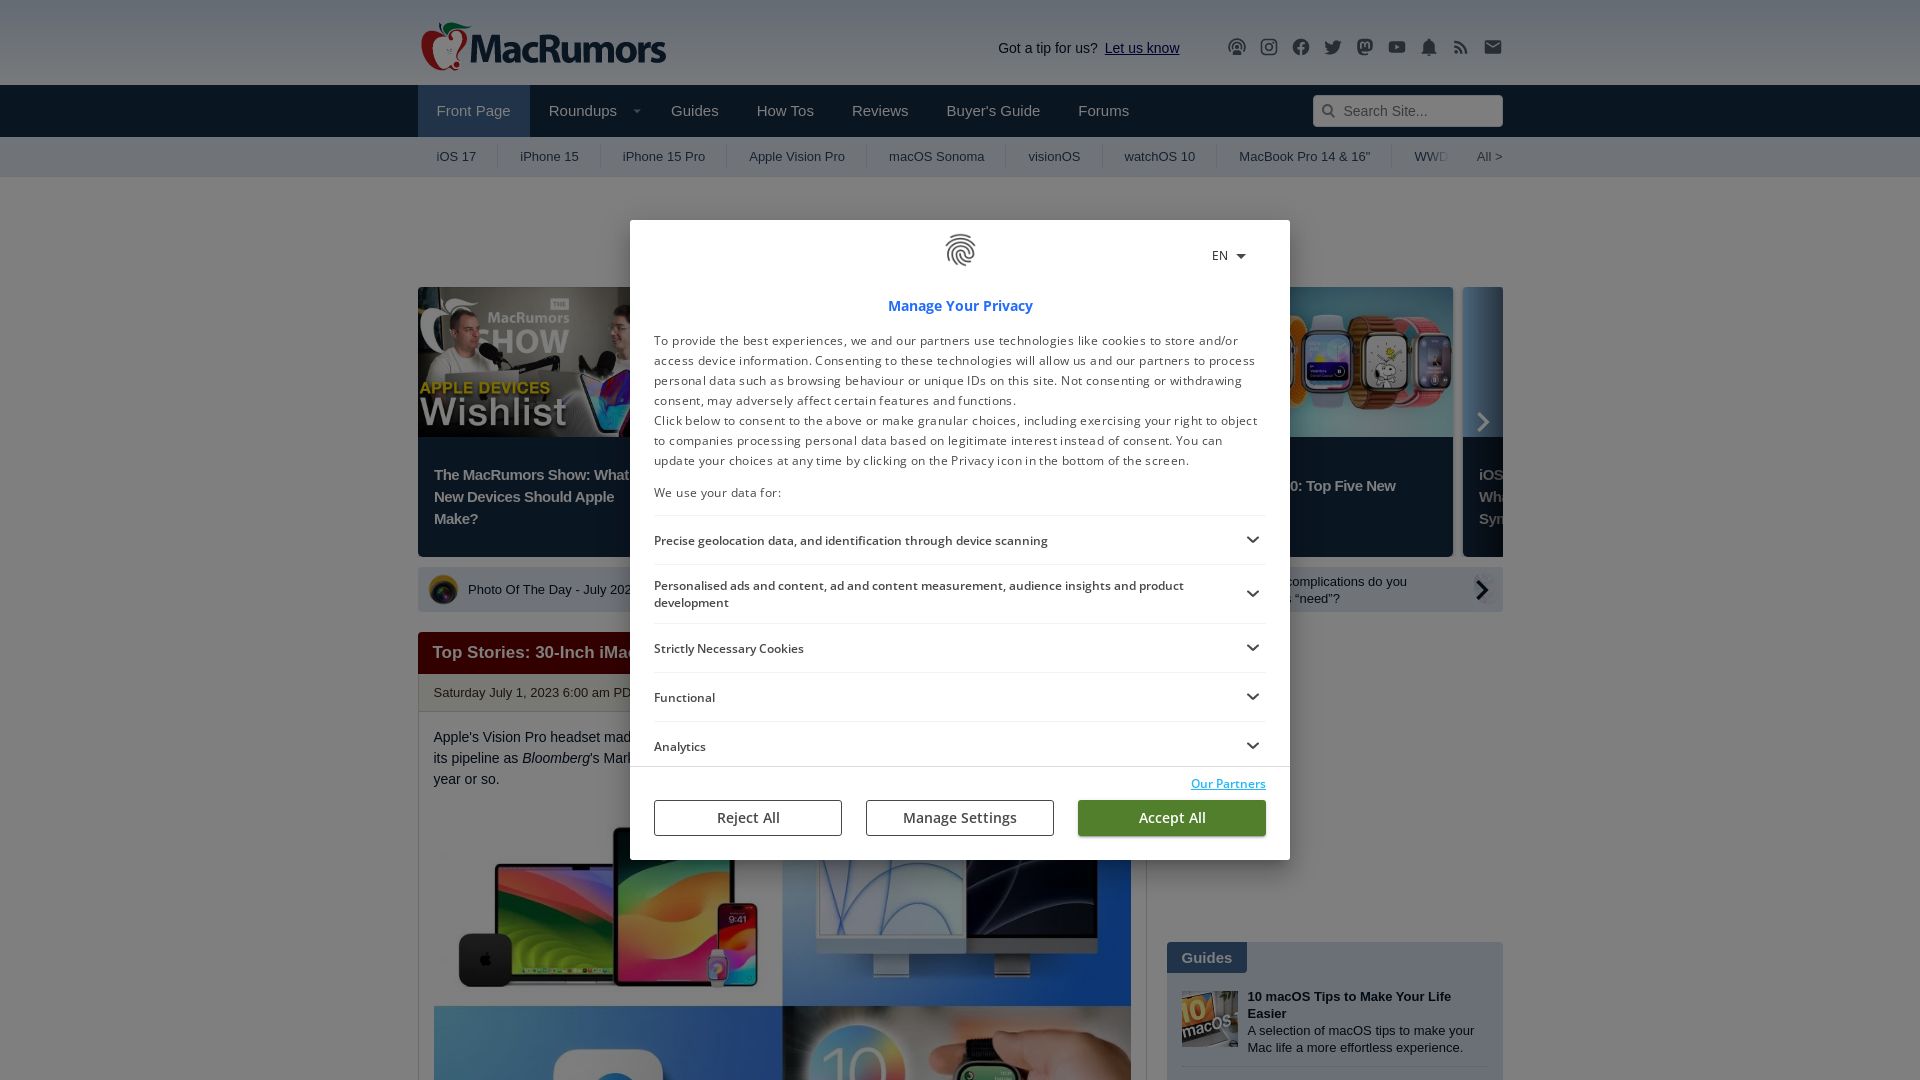 Website status macrumors.com is   ONLINE